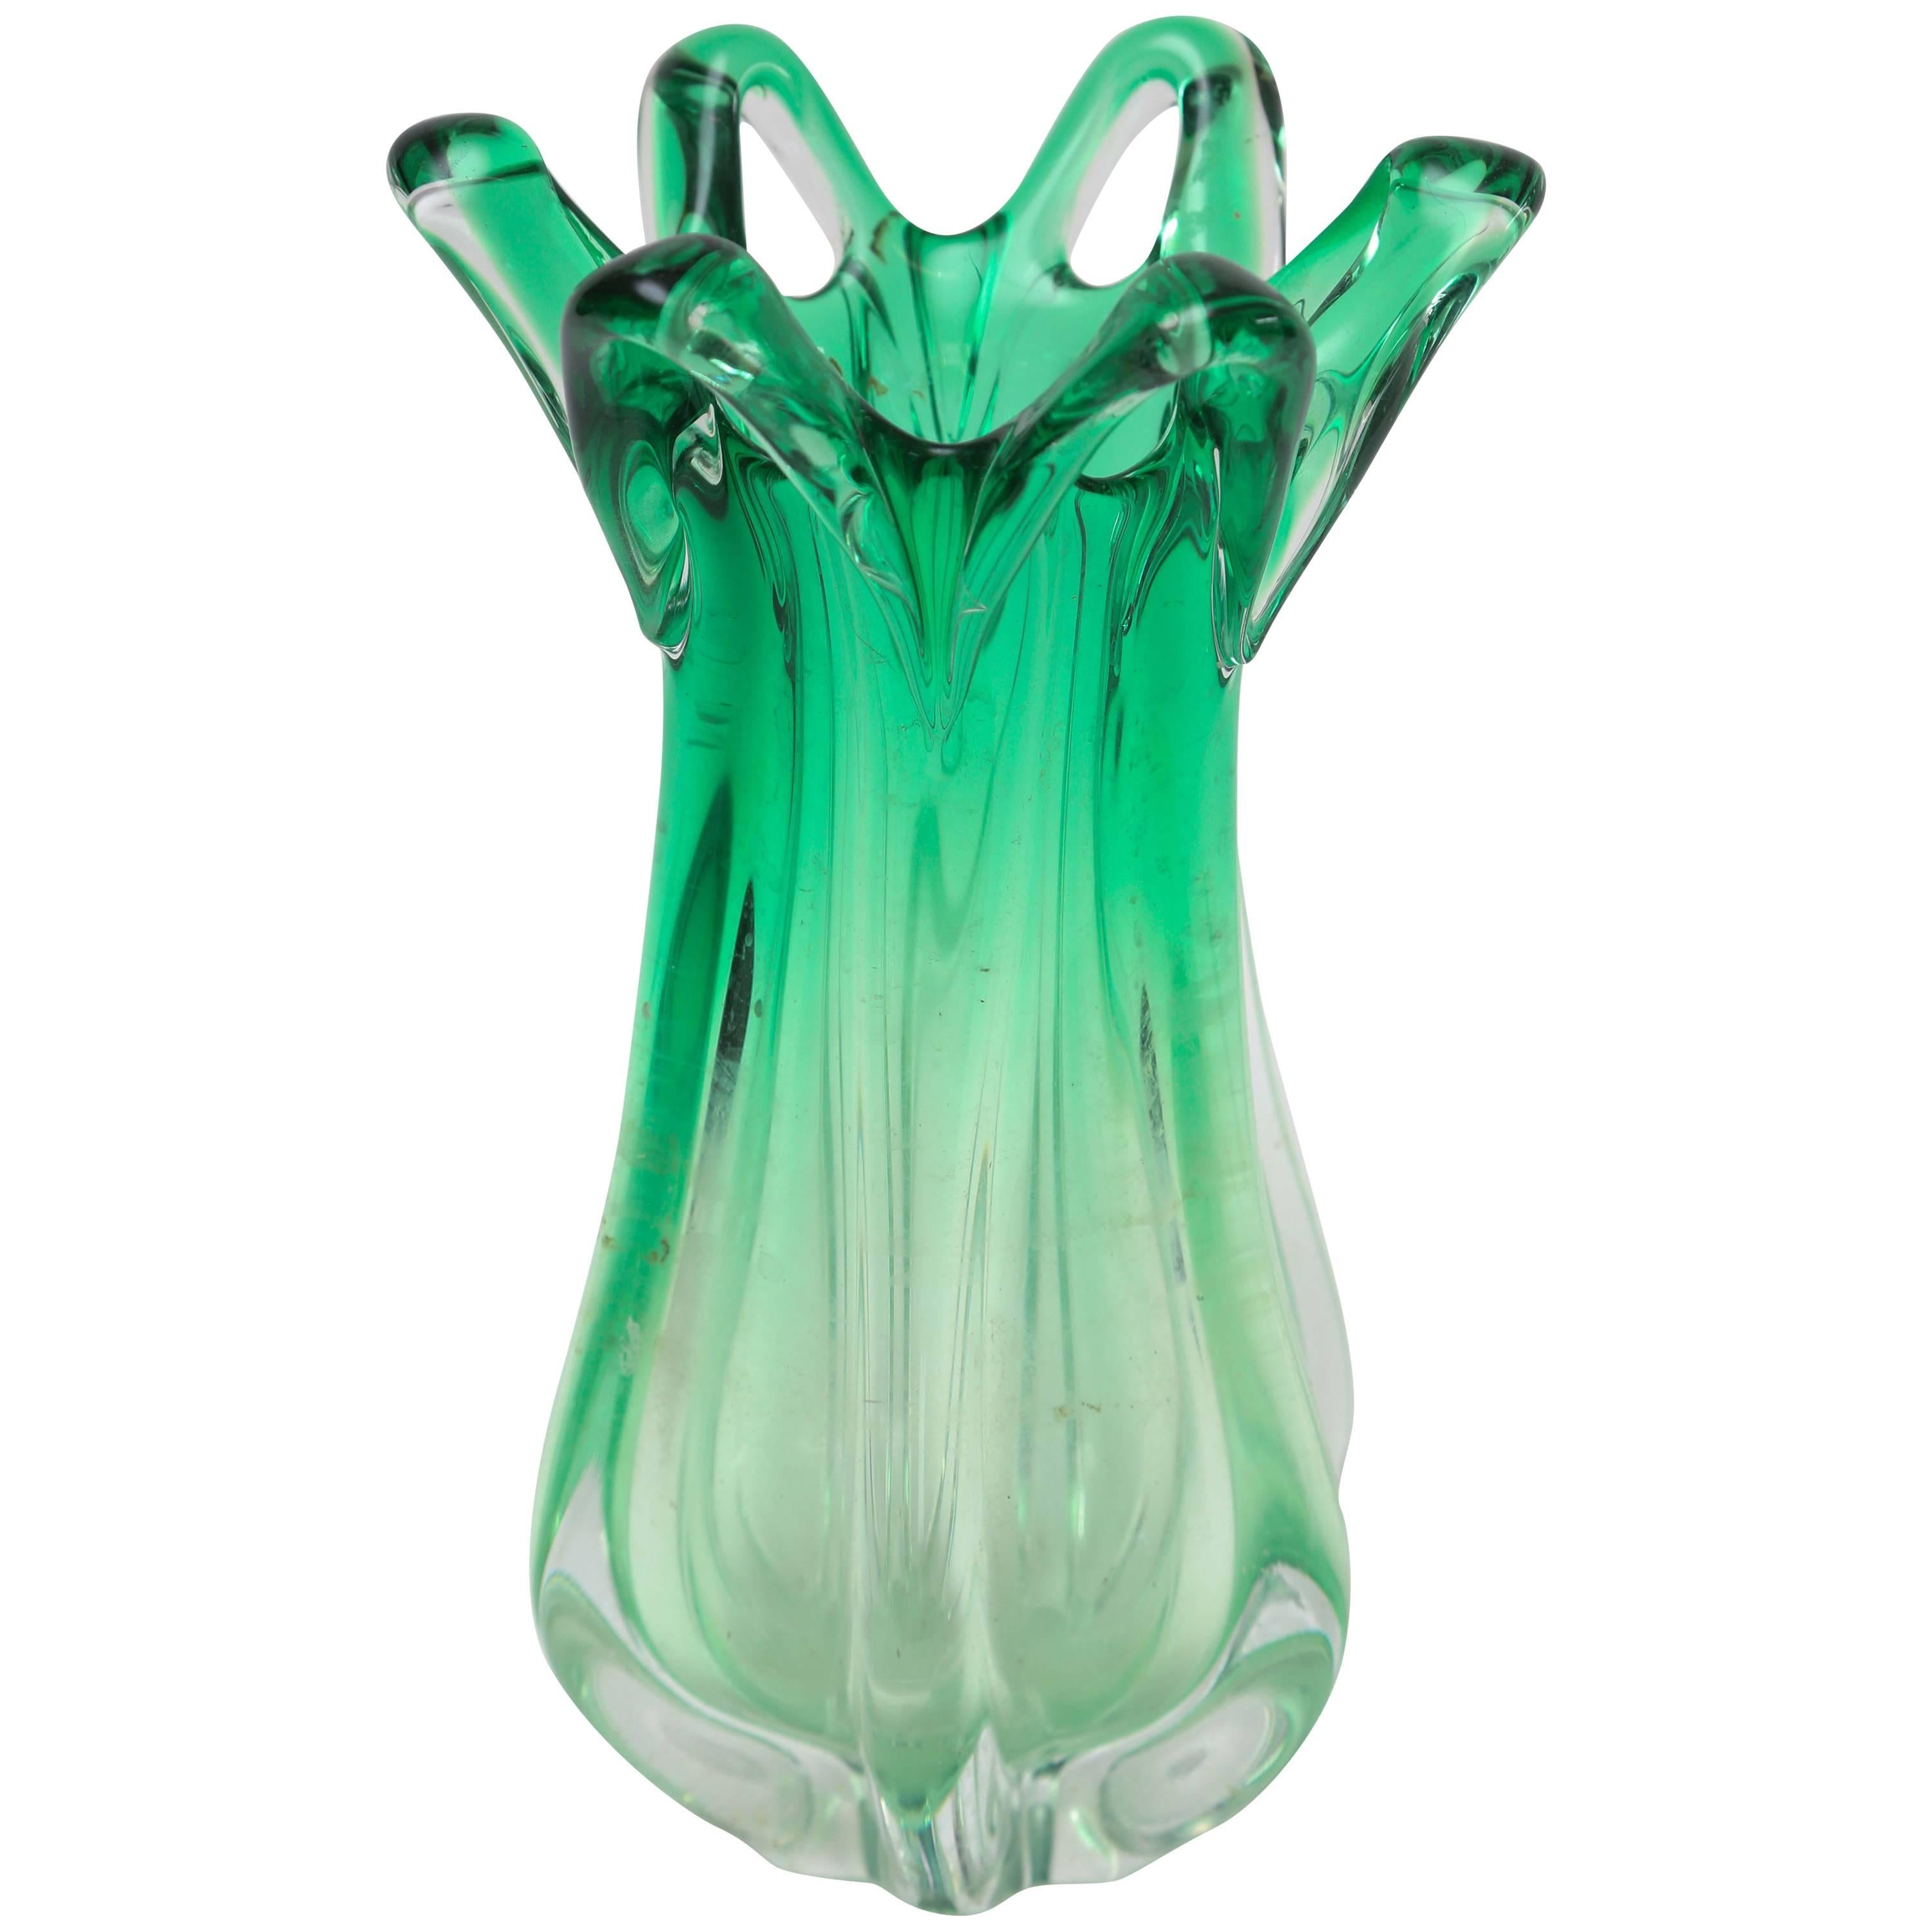 Grüne Ombre-Murano-Vase, 1960er Jahre, Italien